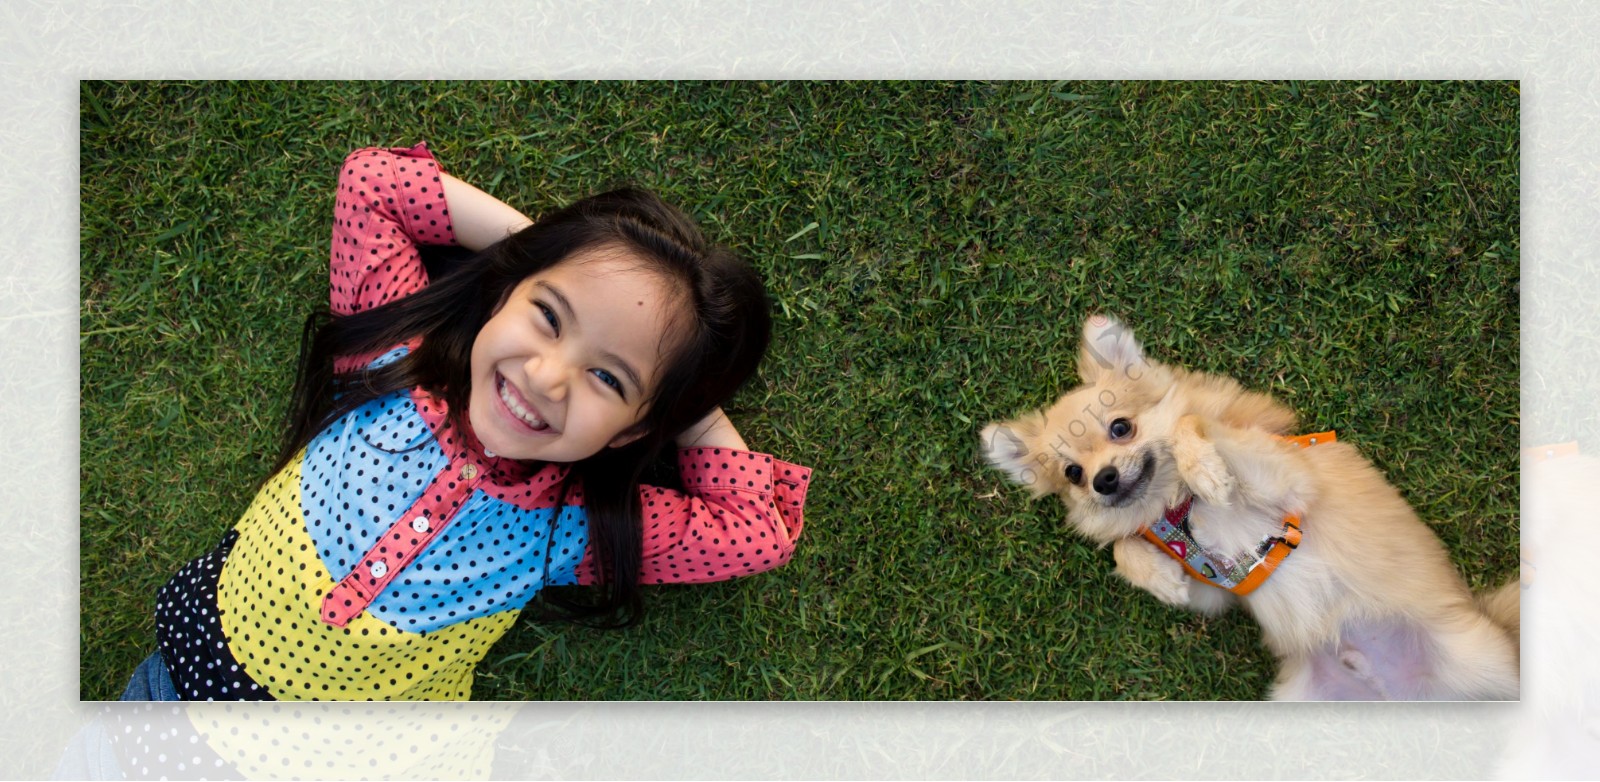 躺在草坪上的小女孩与小狗图片